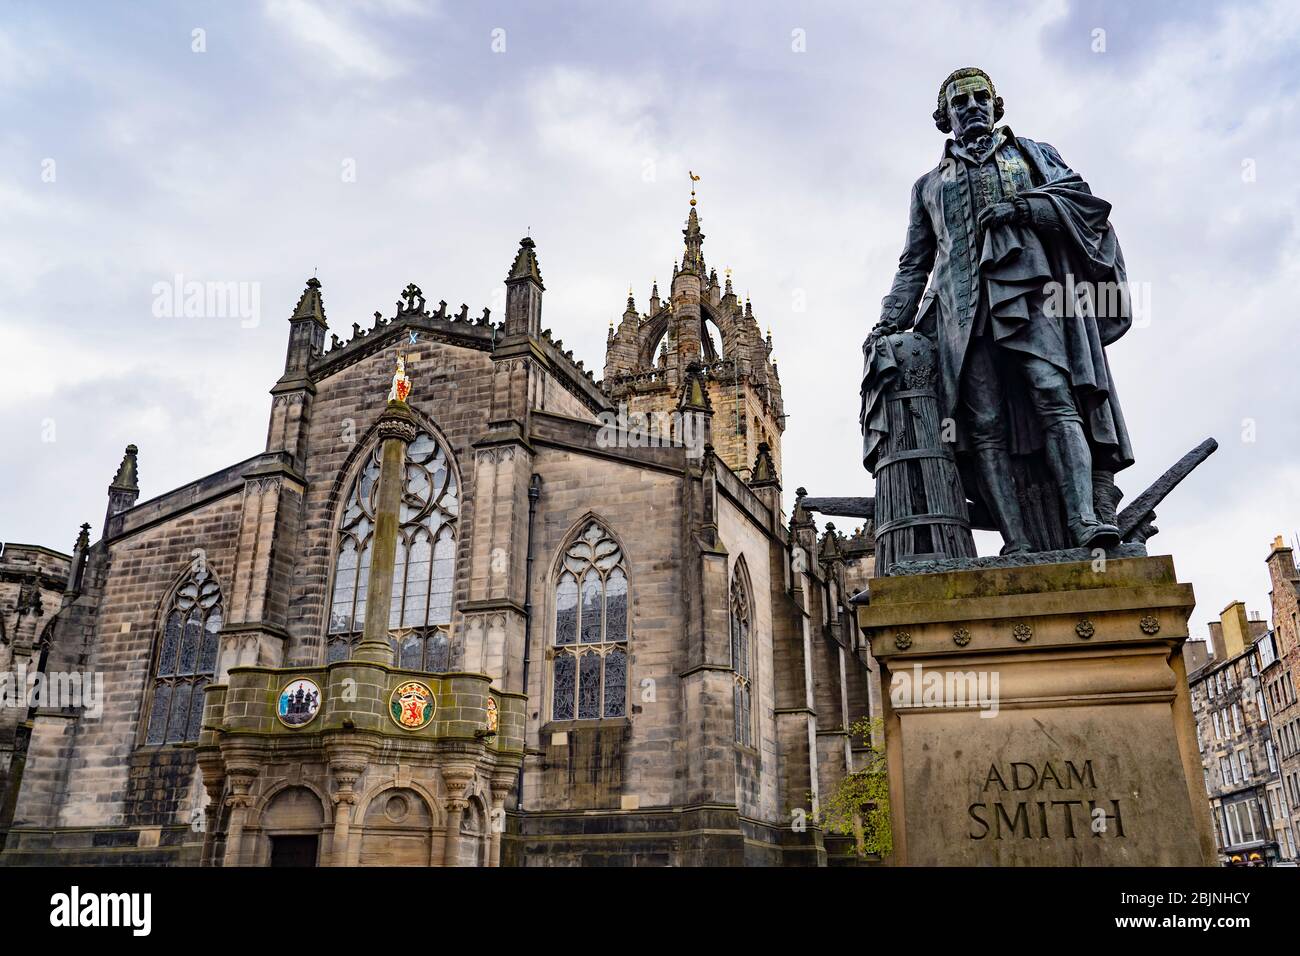 Vue sur la statue d'Adam Smith avec la cathédrale St Giles à l'arrière sur le Royal Mile dans la vieille ville d'Edimbourg, en Écosse, au Royaume-Uni Banque D'Images